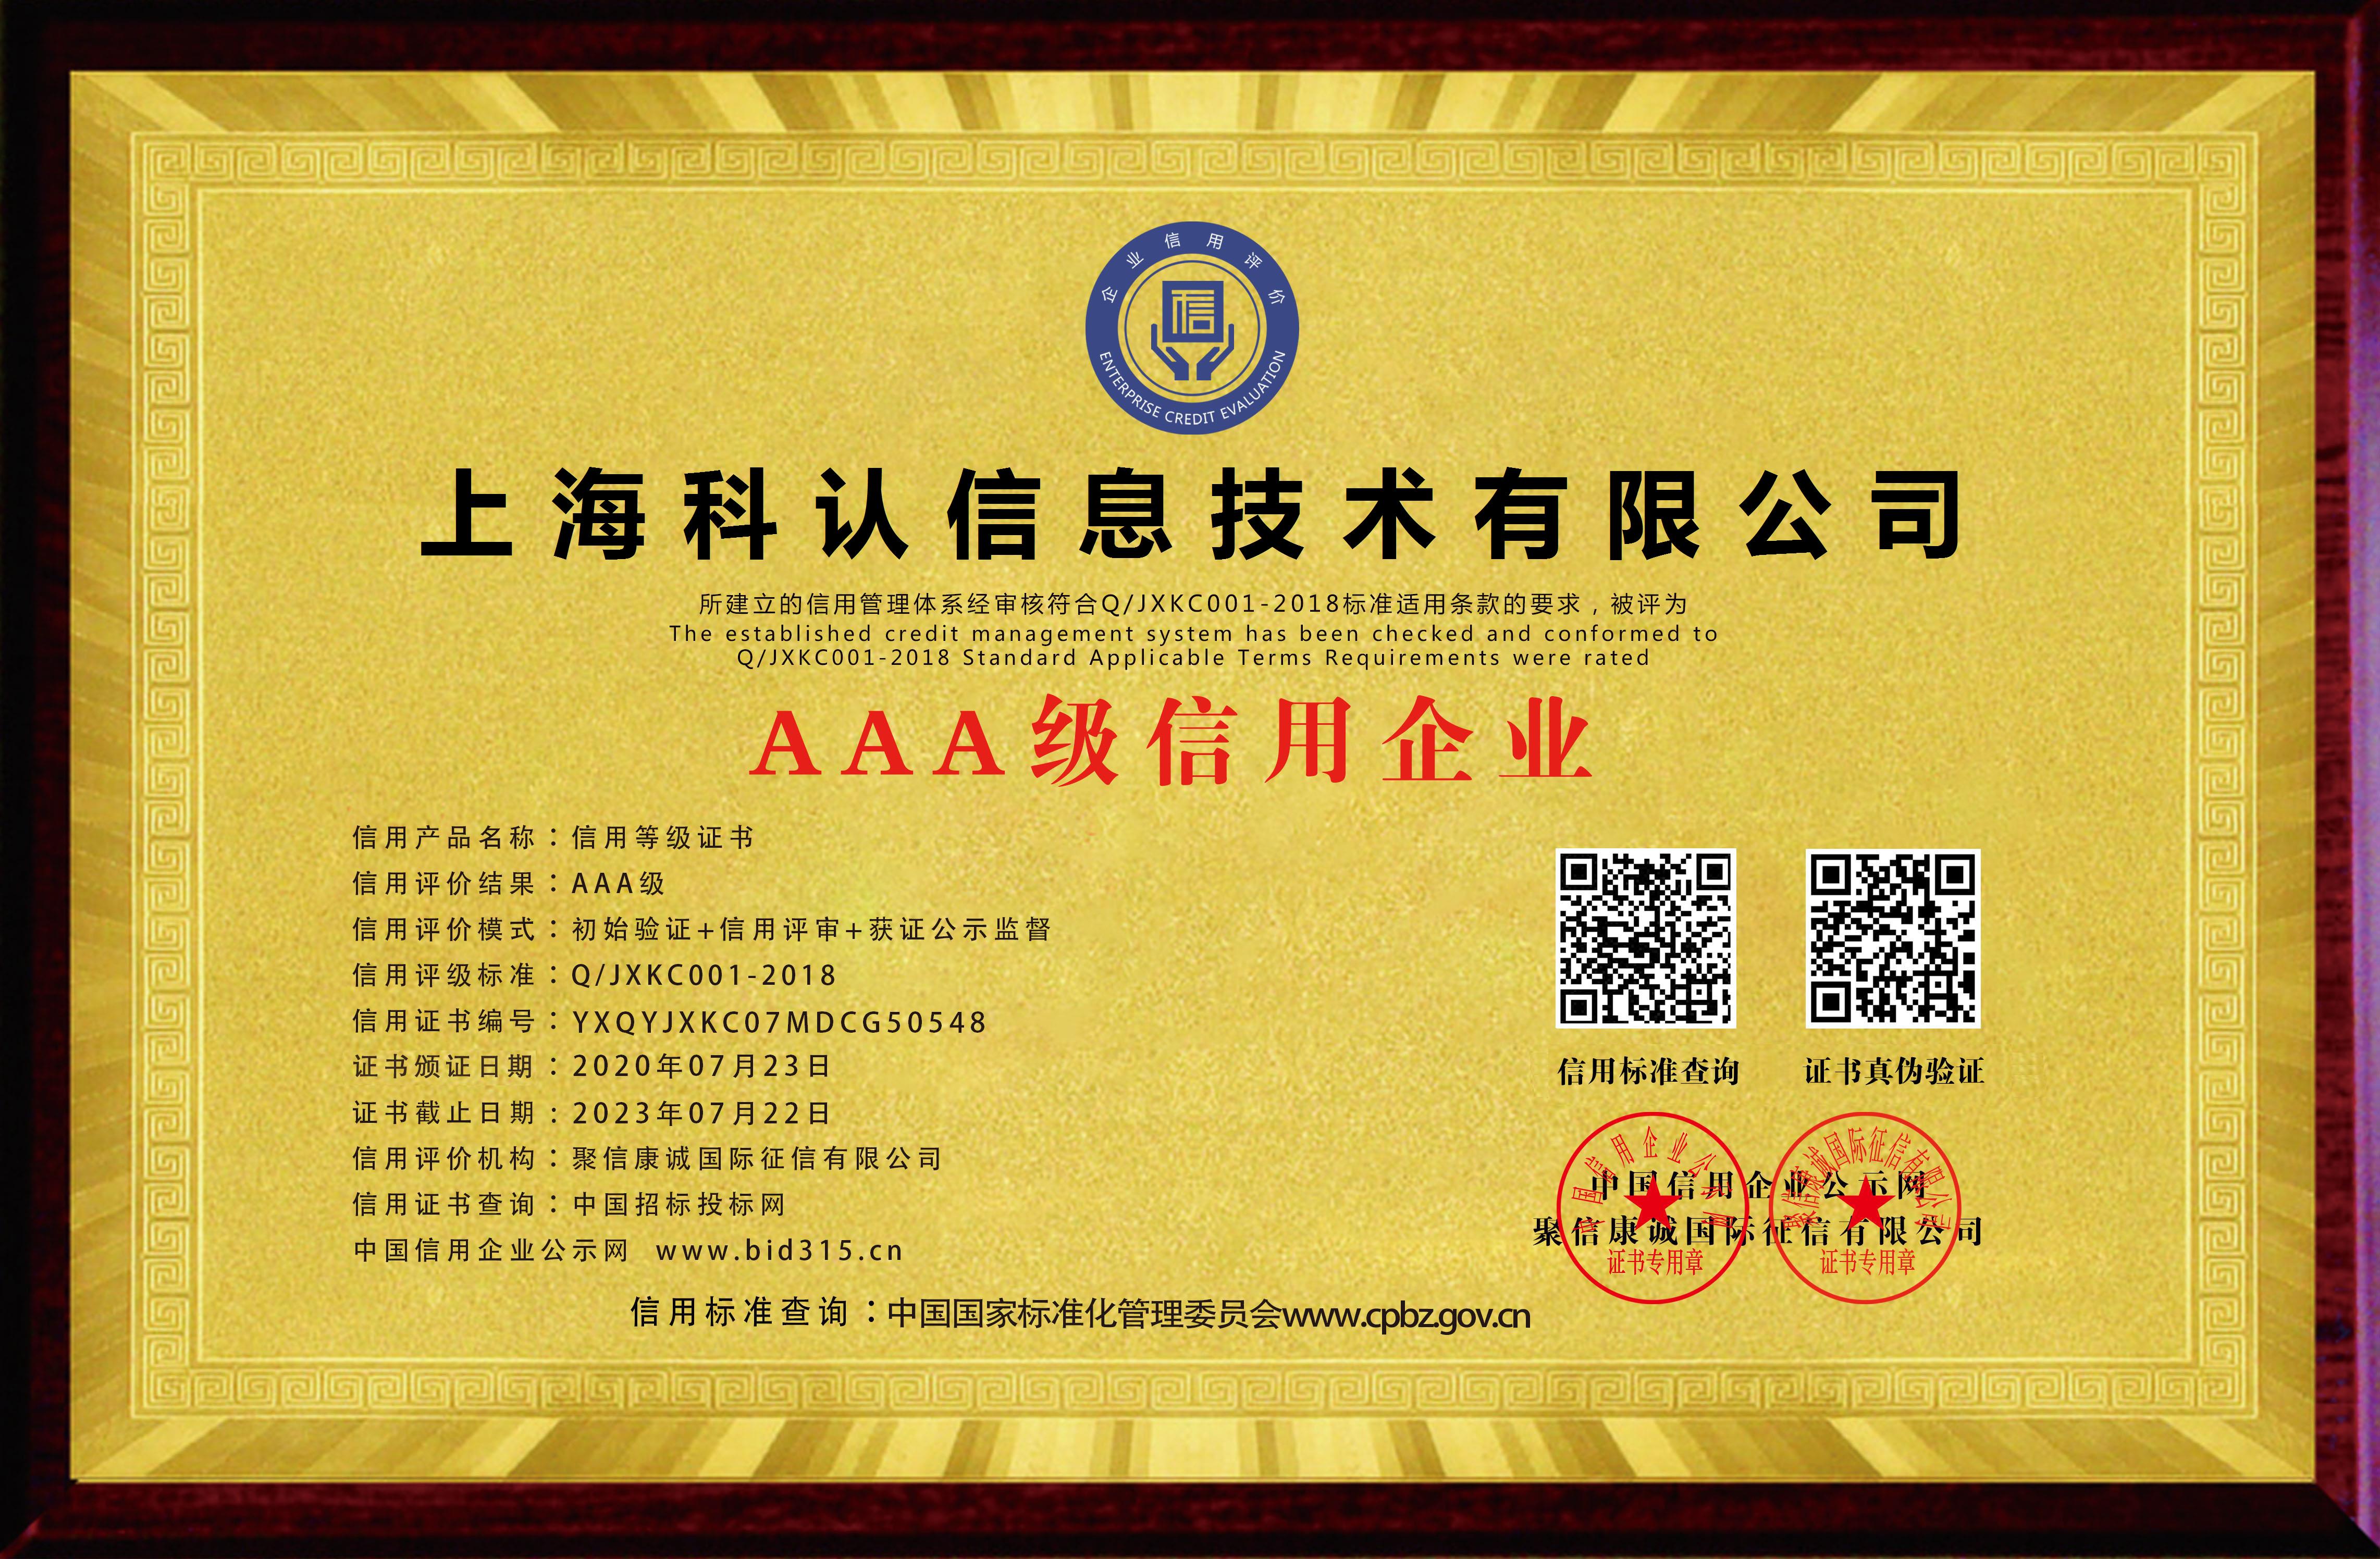 上海科认信息技术有限公司_AAA级信用企业_牌匾_电子版